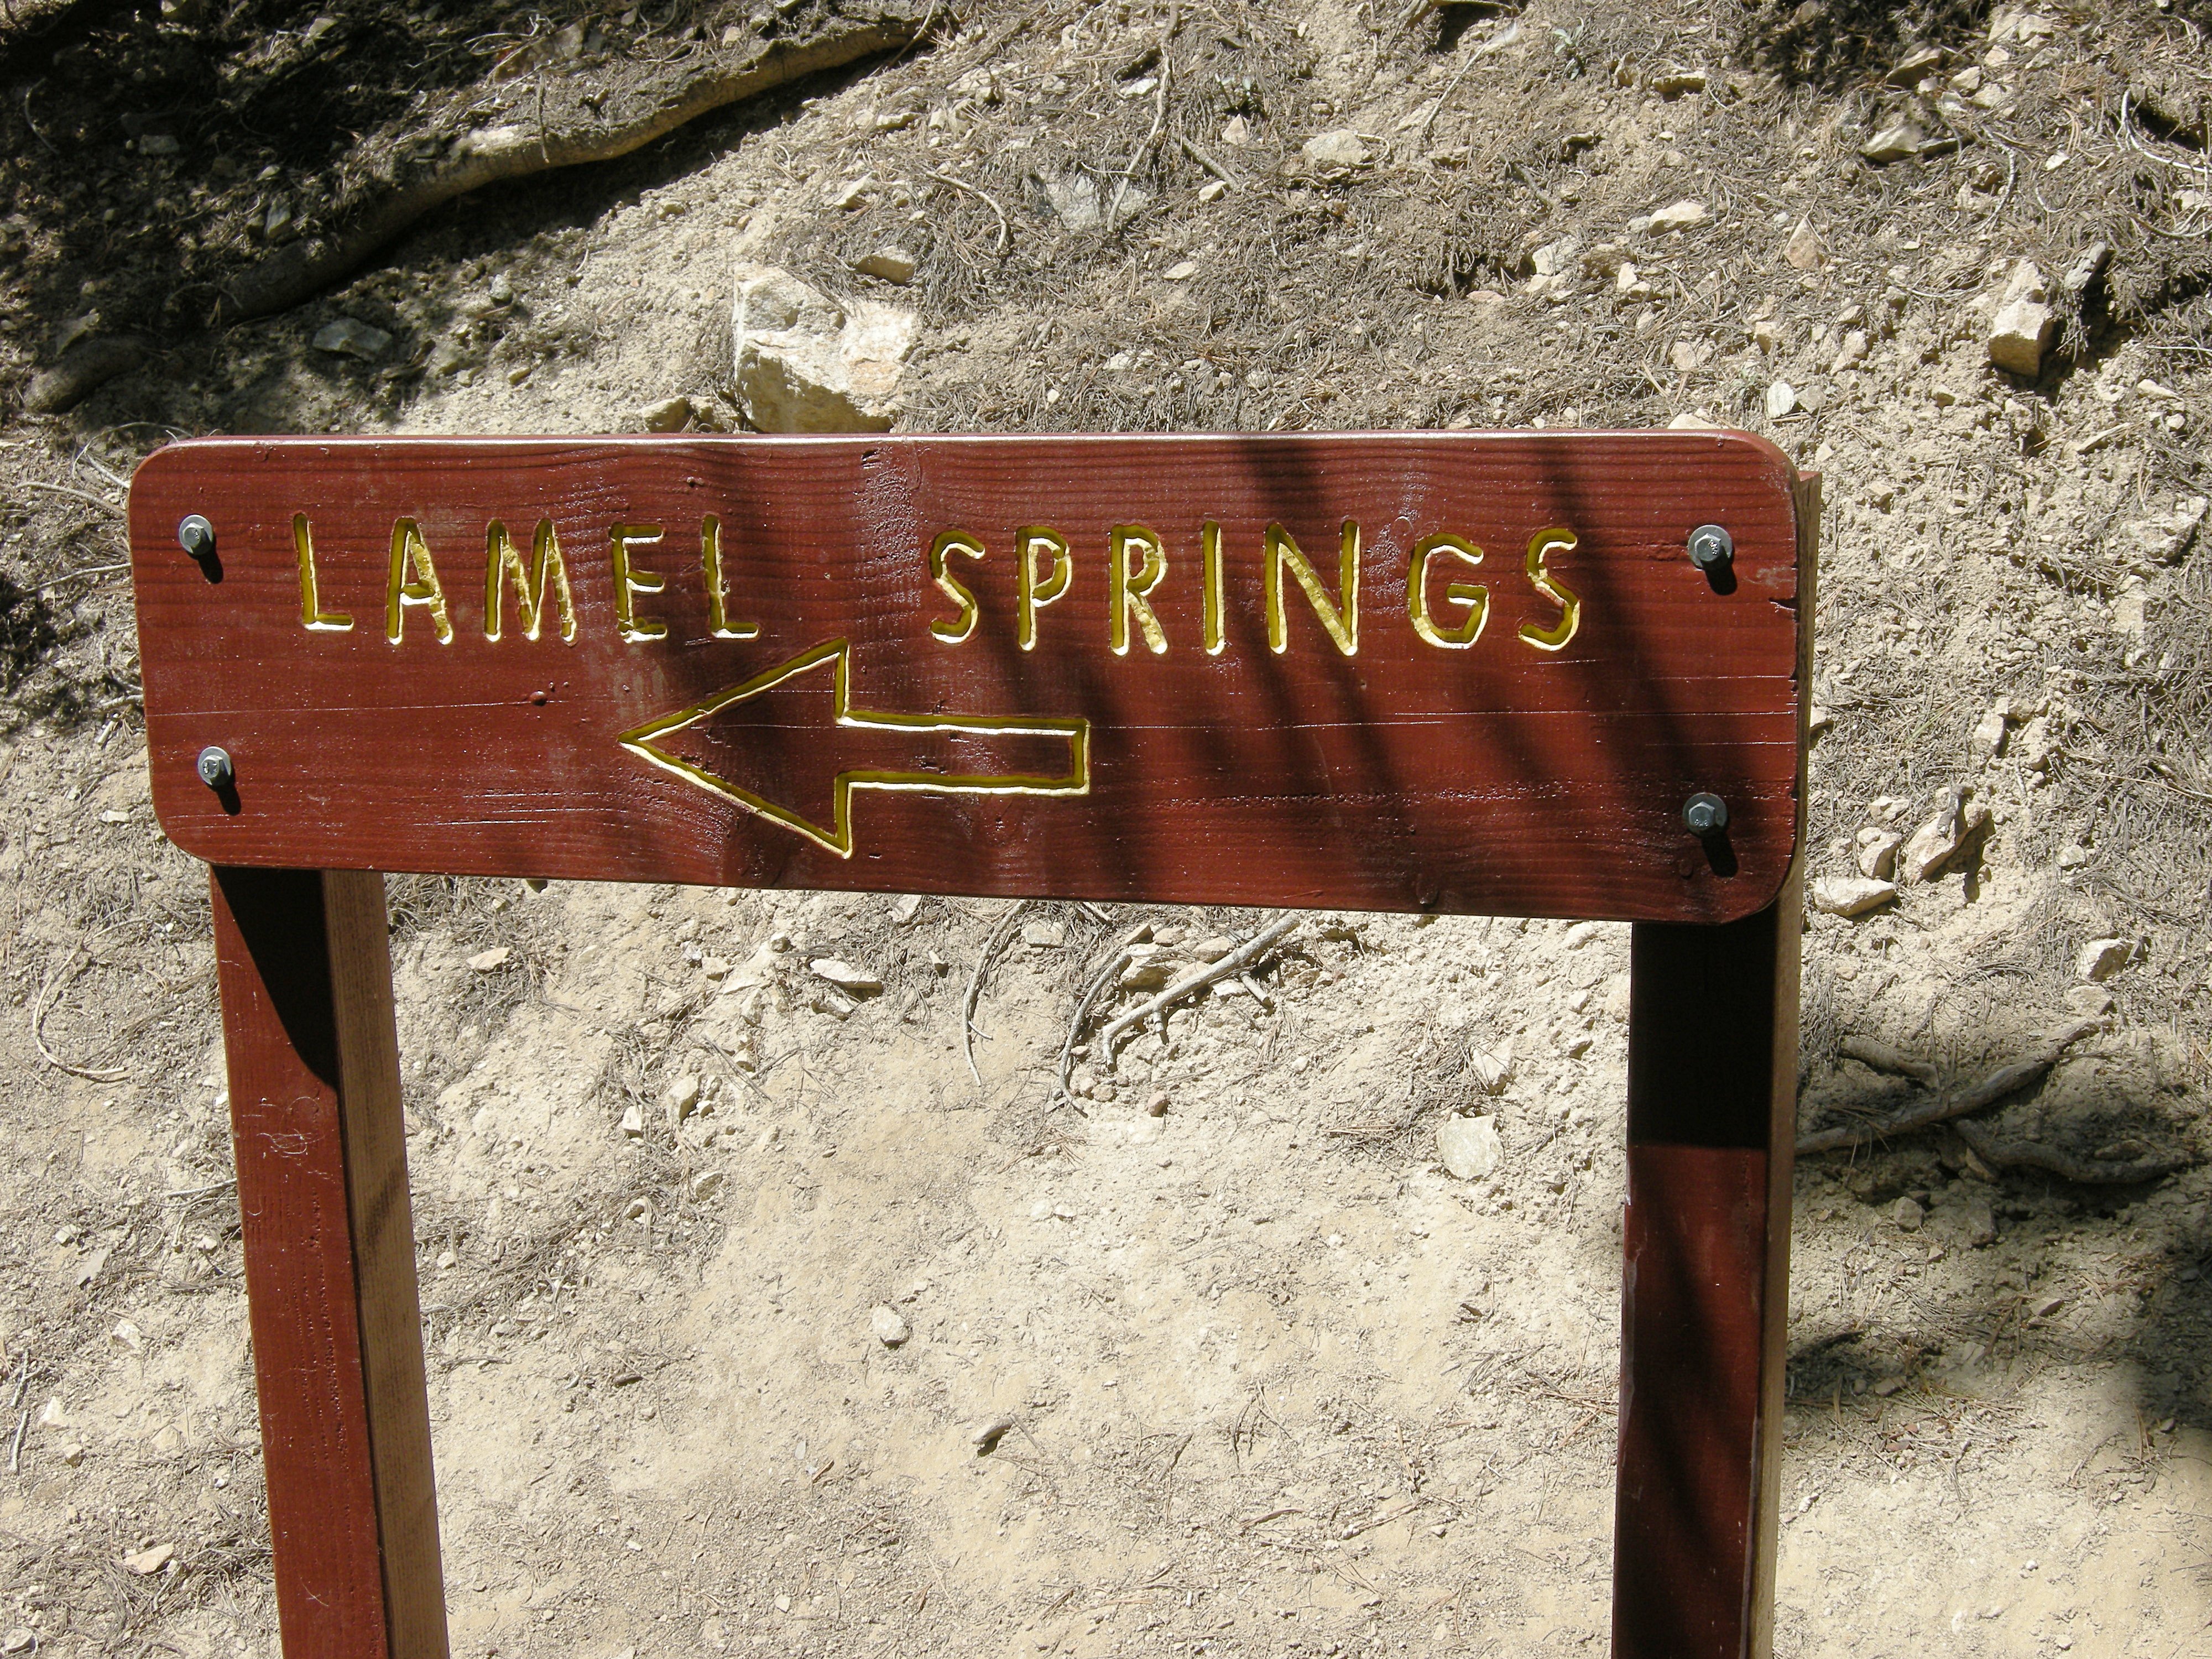 Lamel Spring is a short side trip